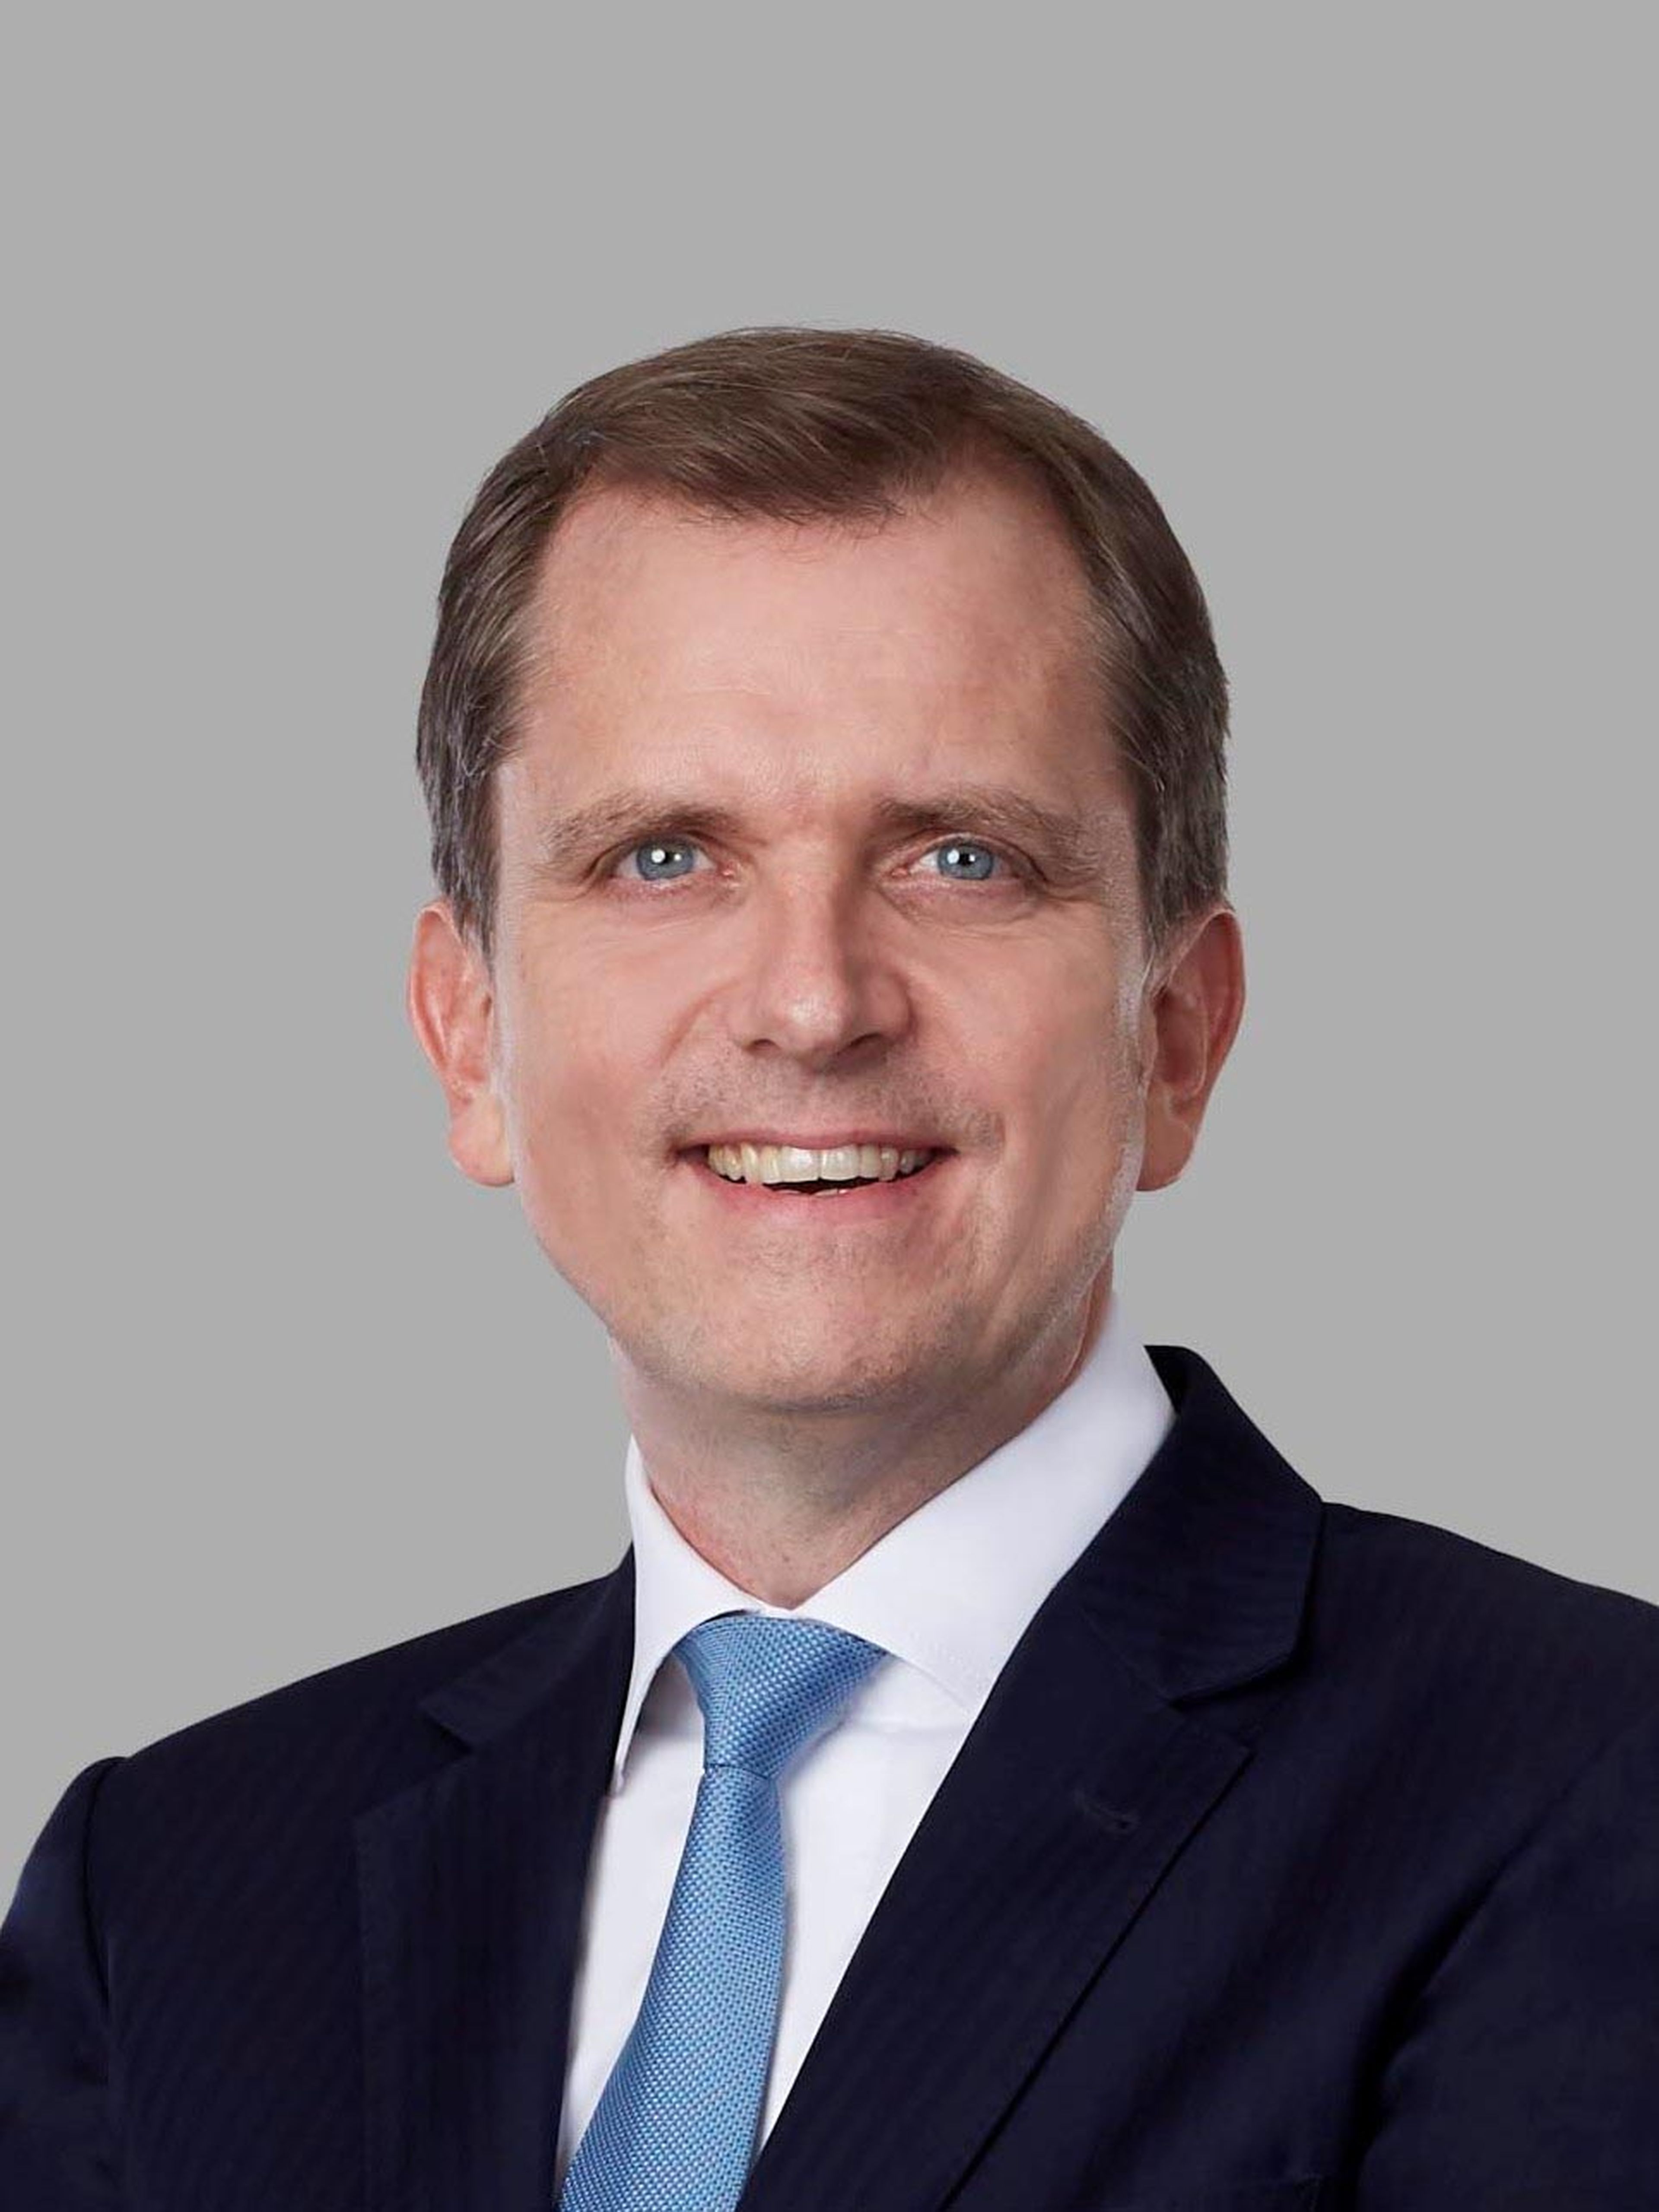 Roel Huisman, nuevo CEO de ING España y Portugal